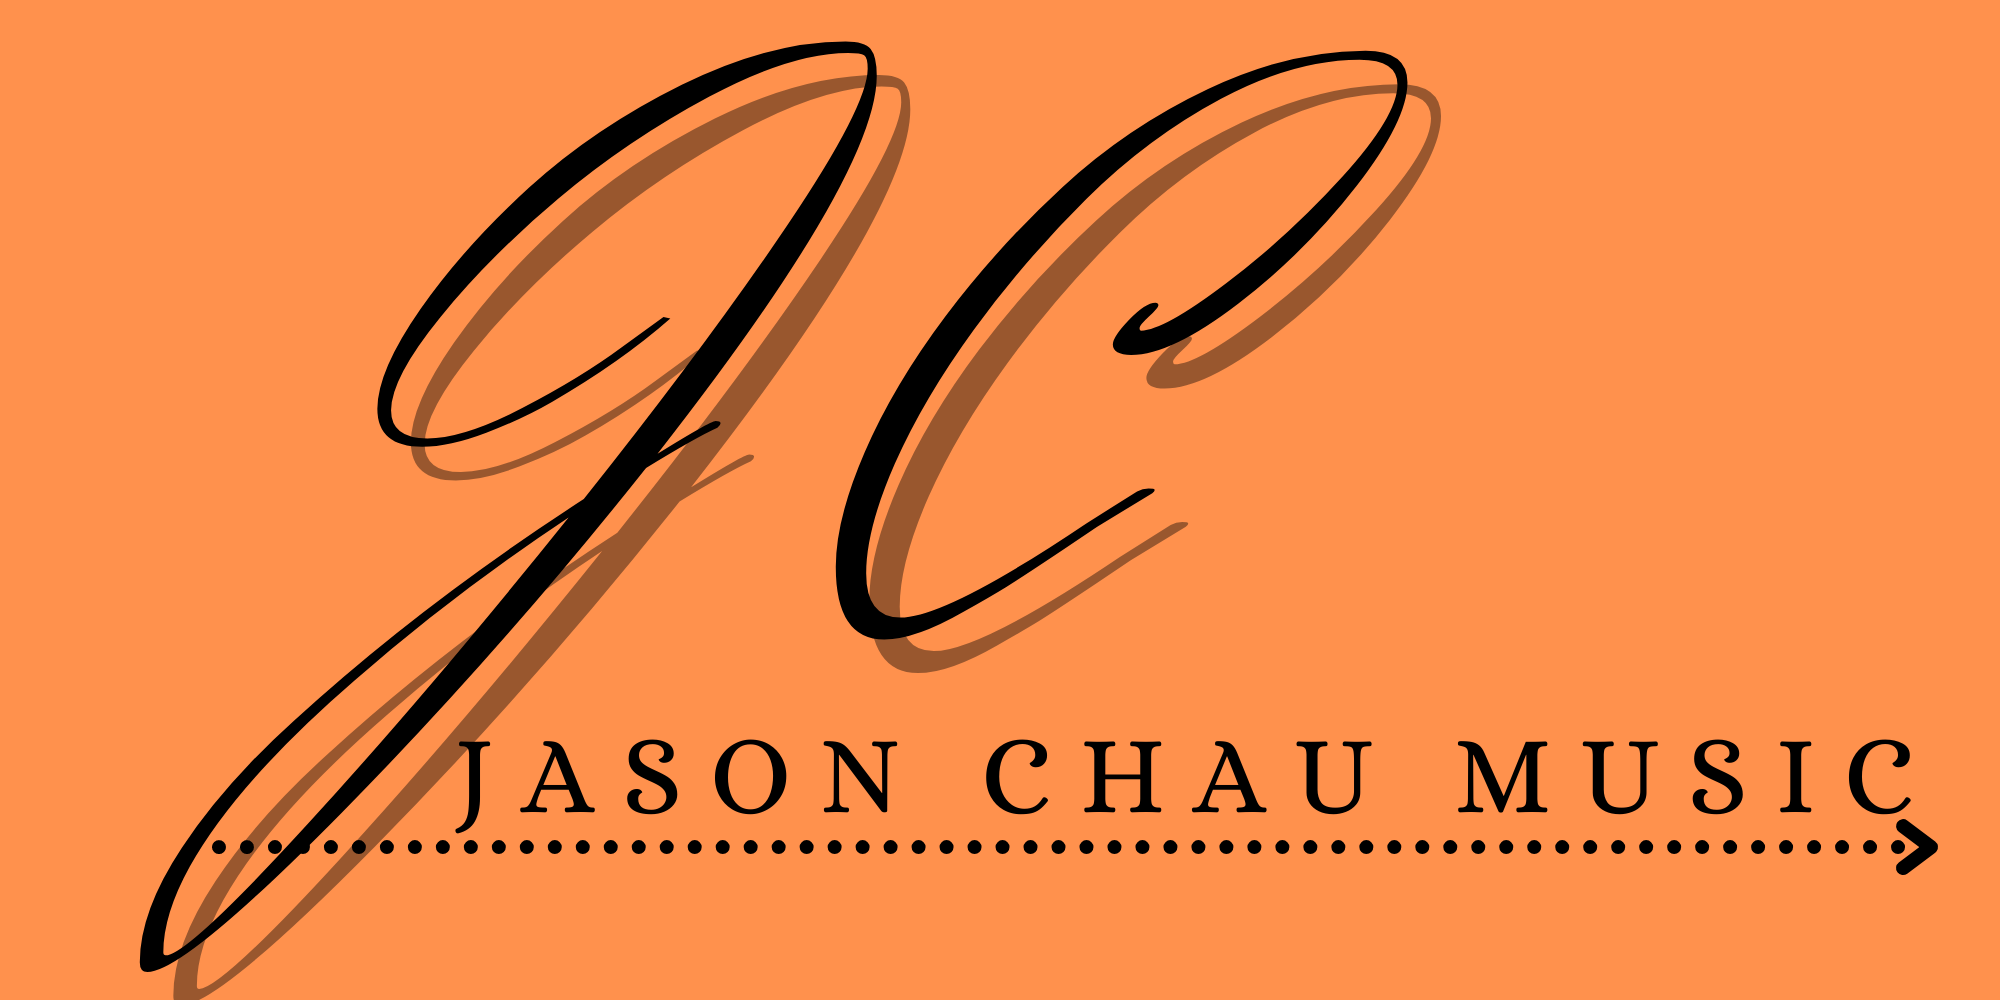 Jason Chau Music